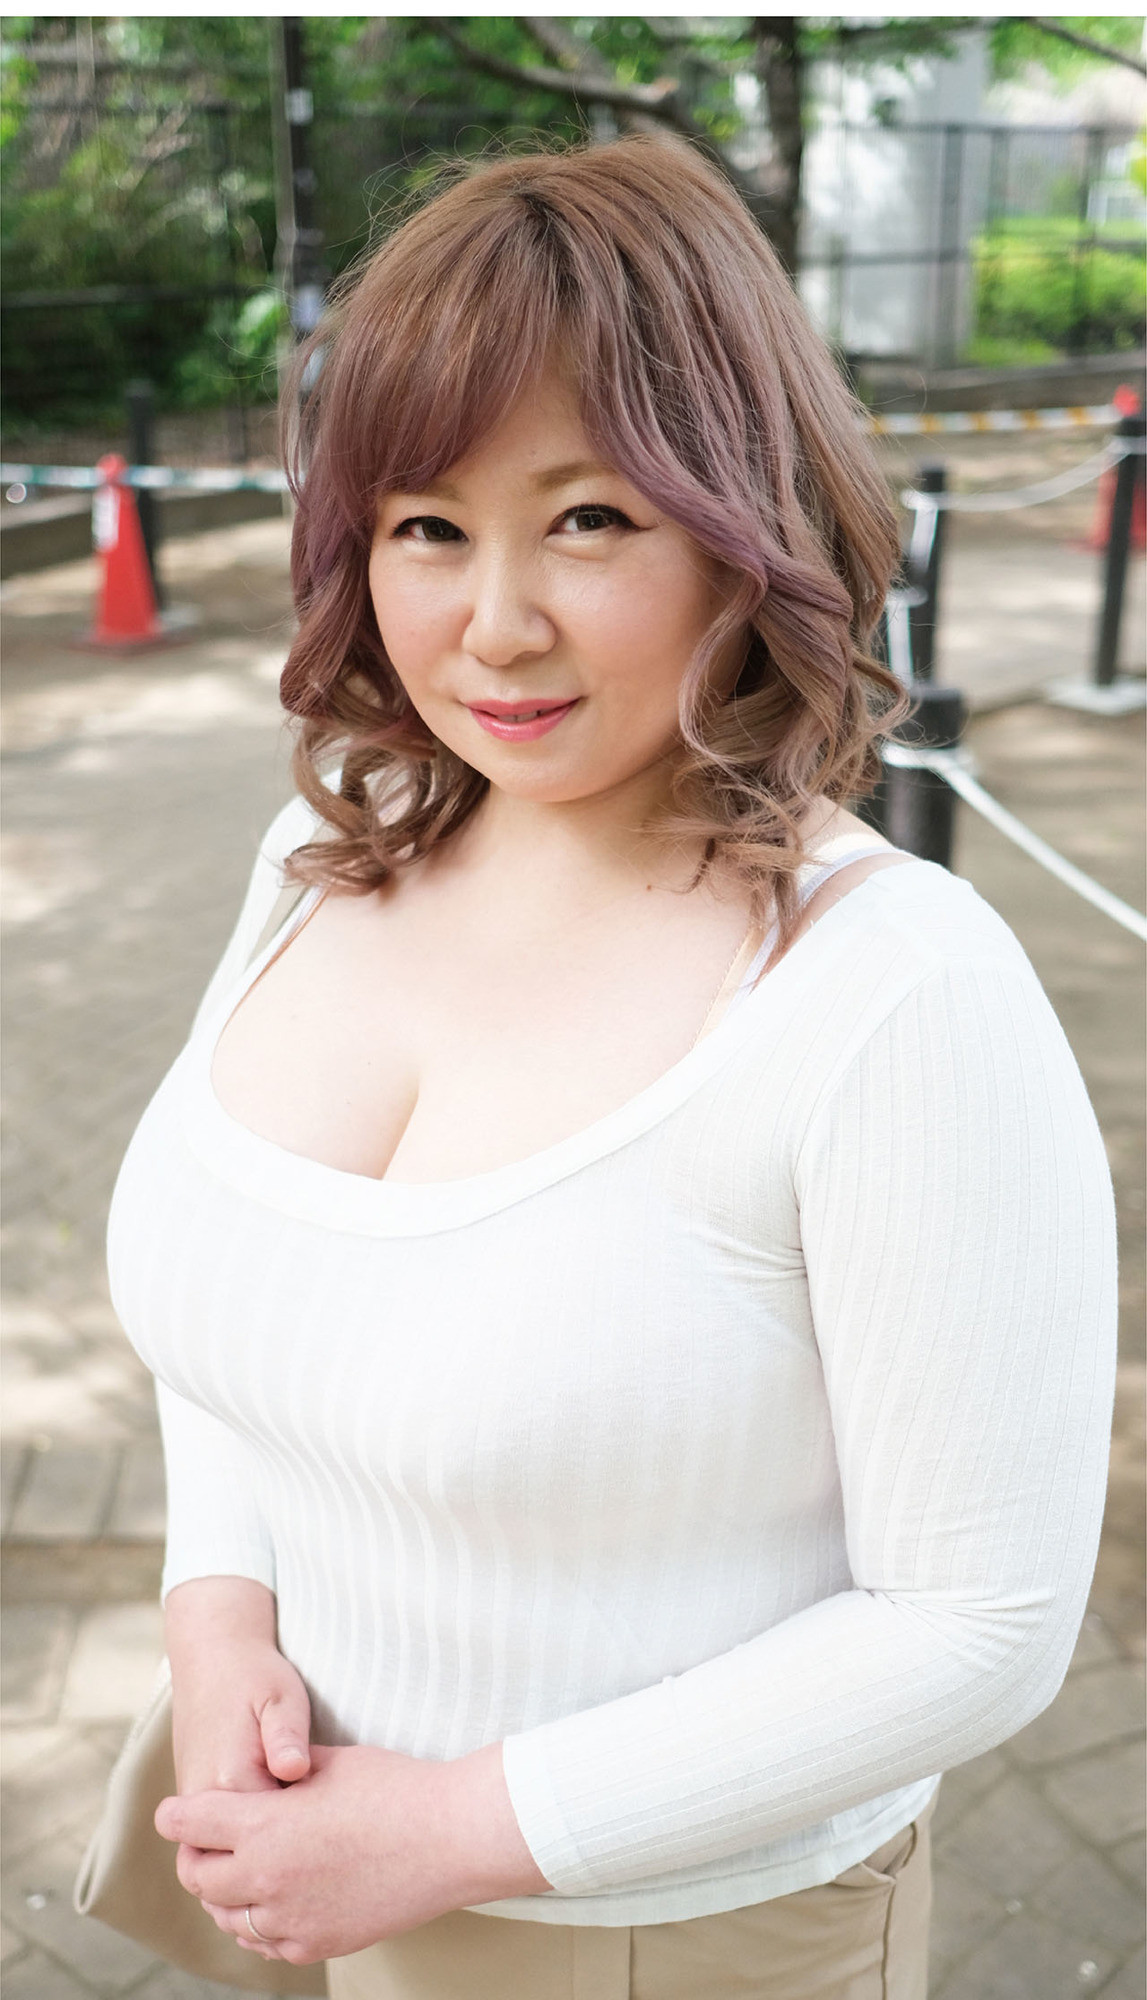 日本で一番ドスケベなおデブさん認定！ぽっちゃり熟女専門店のカリスマ爆乳風俗嬢、痴女りまくり15発射させるプライベート動画公開します。 律子（53歳）